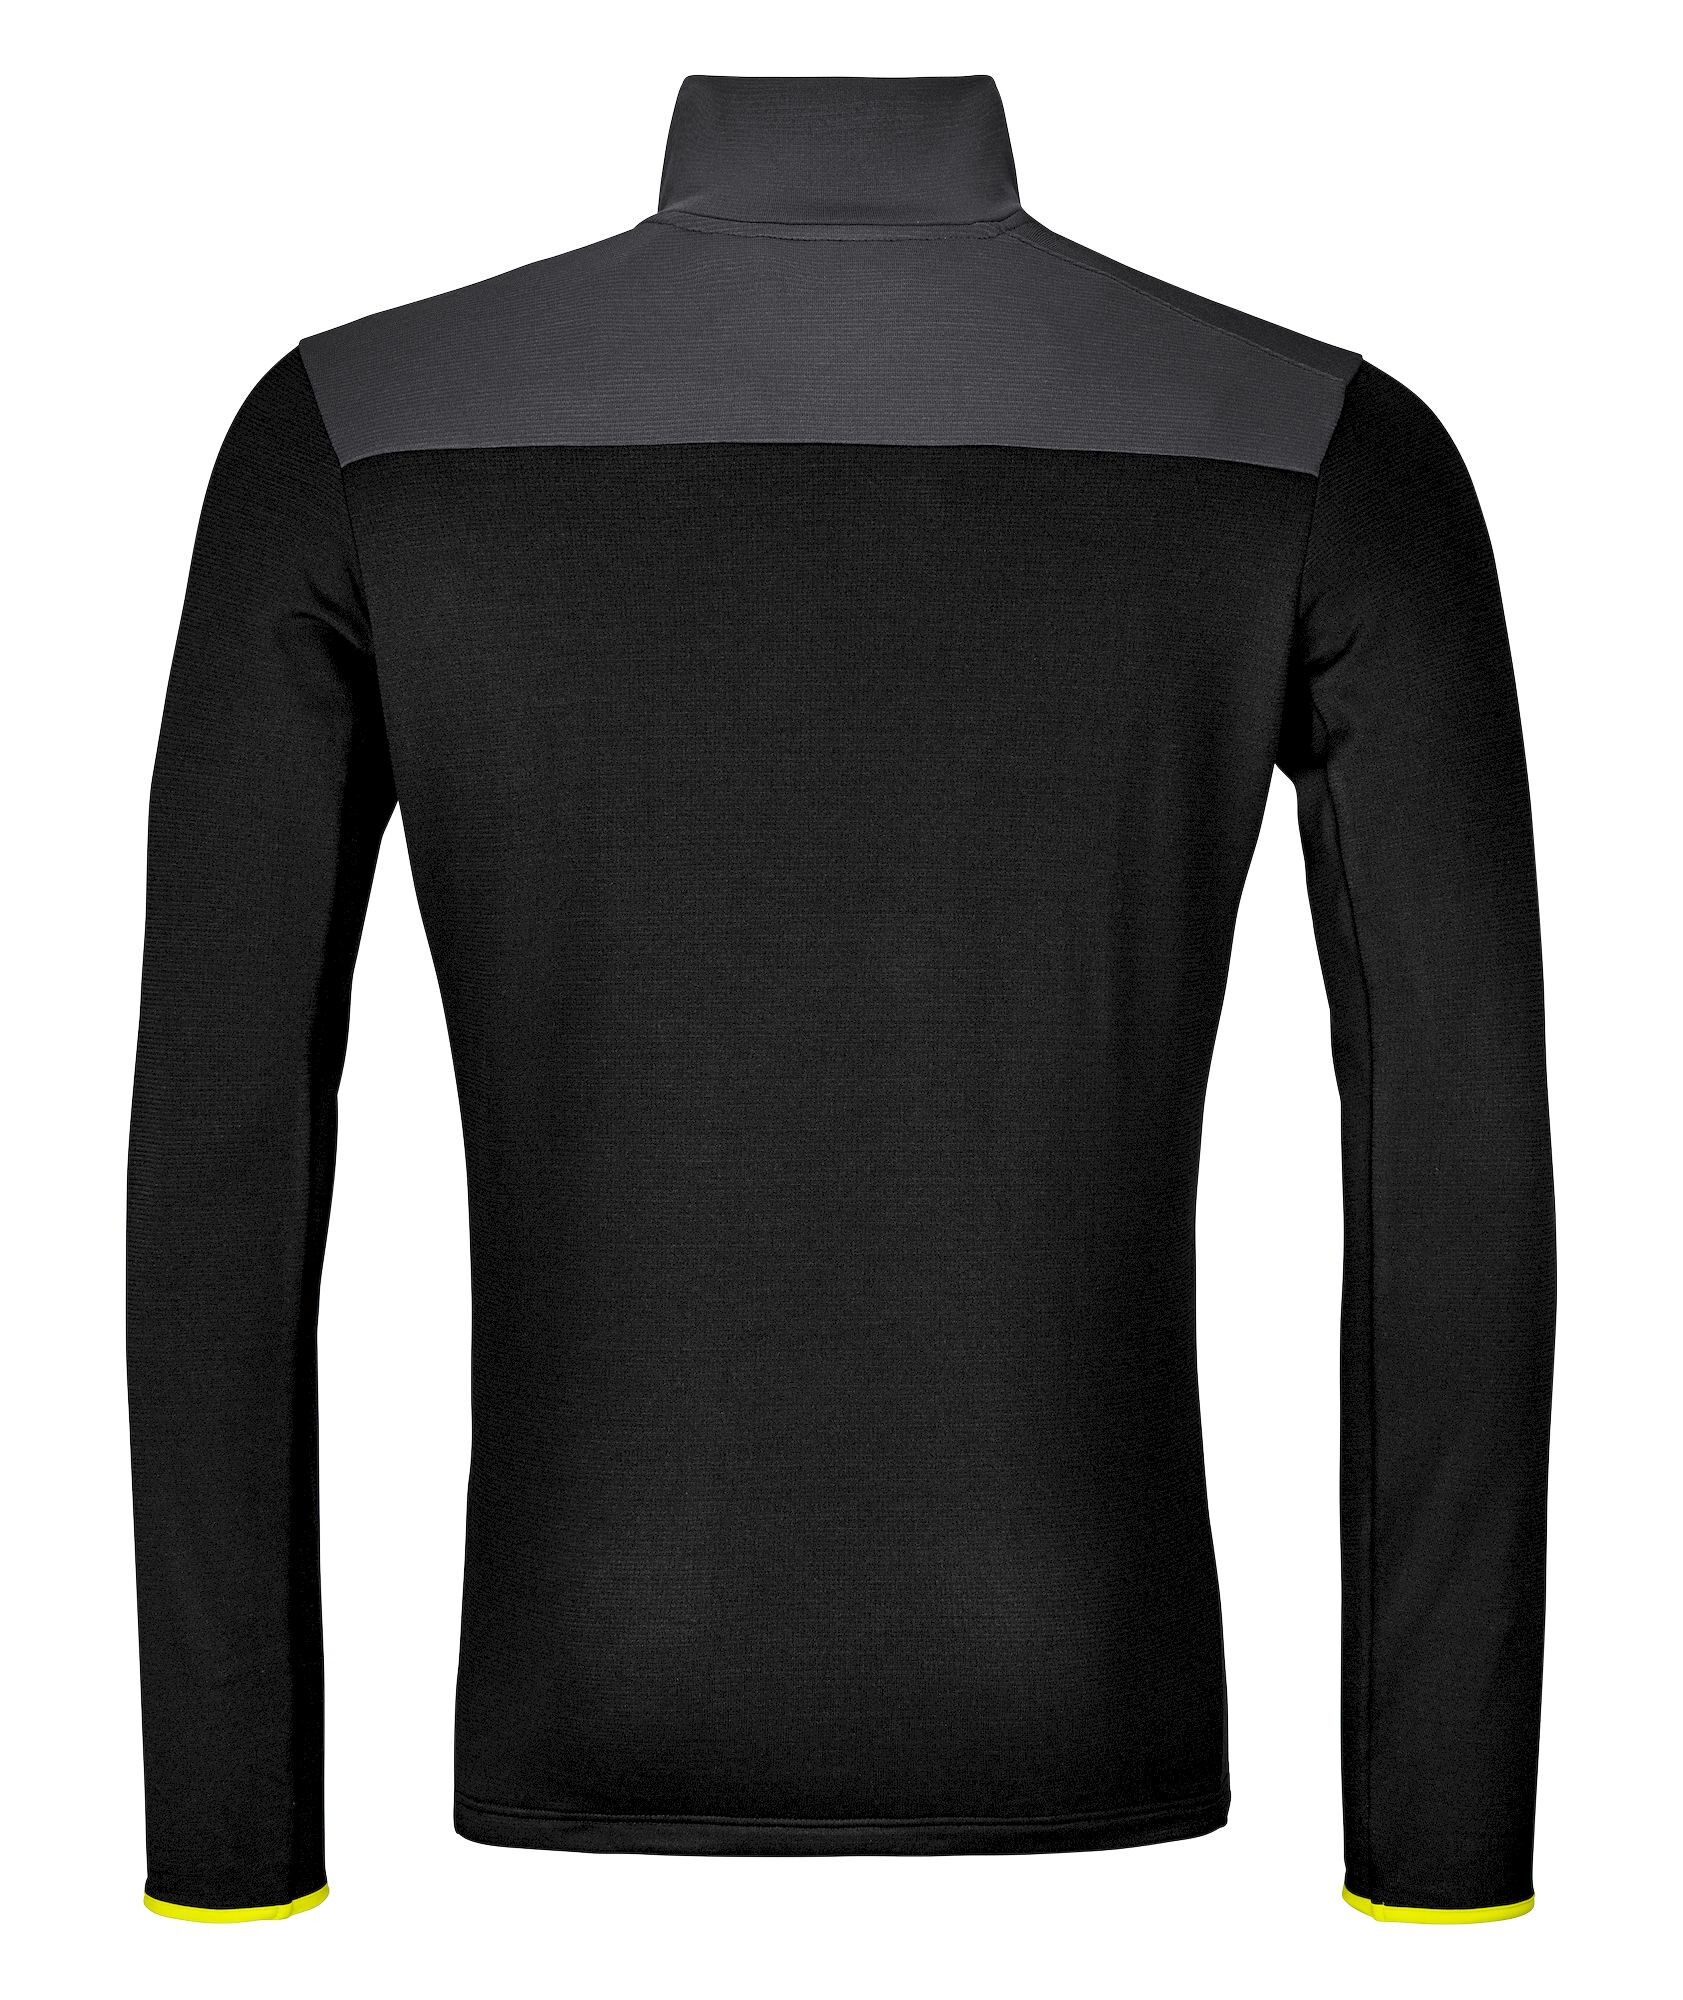 Ortovox Fleece Light Zip Neck - Fleece jacket - Men's